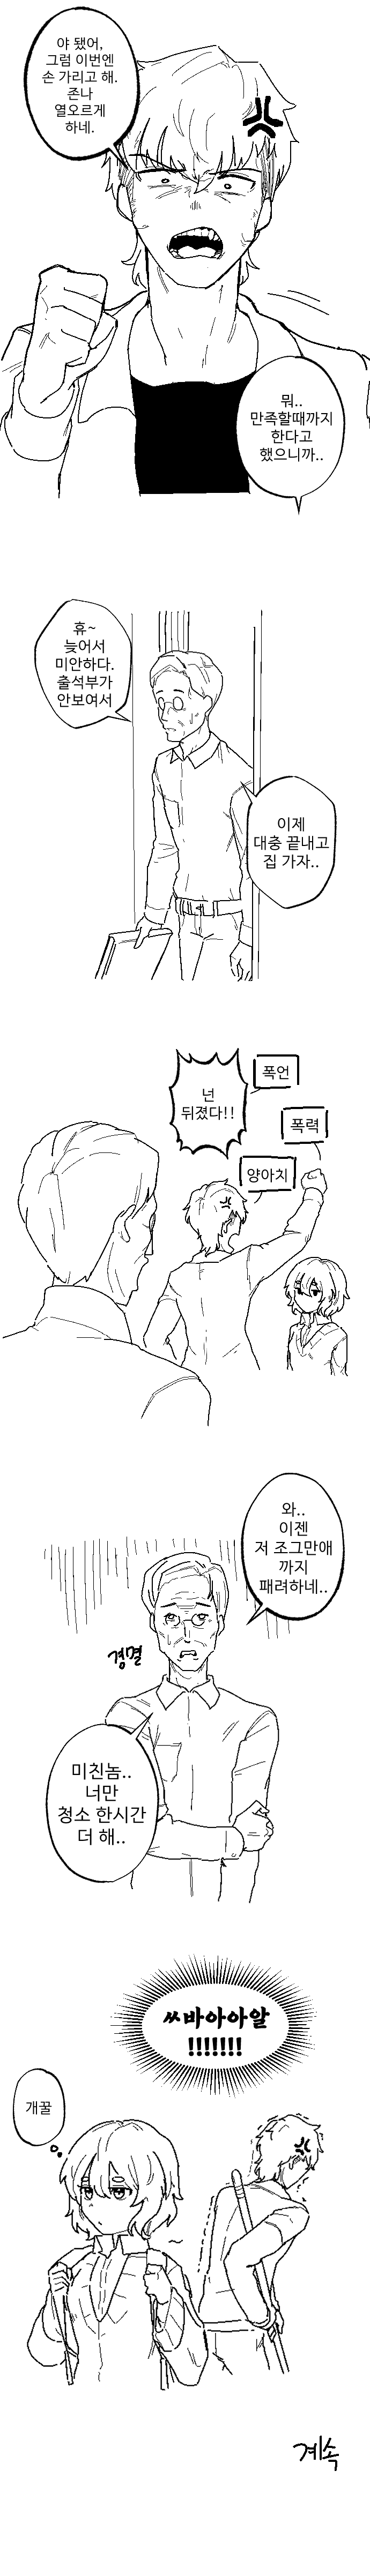 (스아아압)절대 안지는 럽코 만화.manhwa